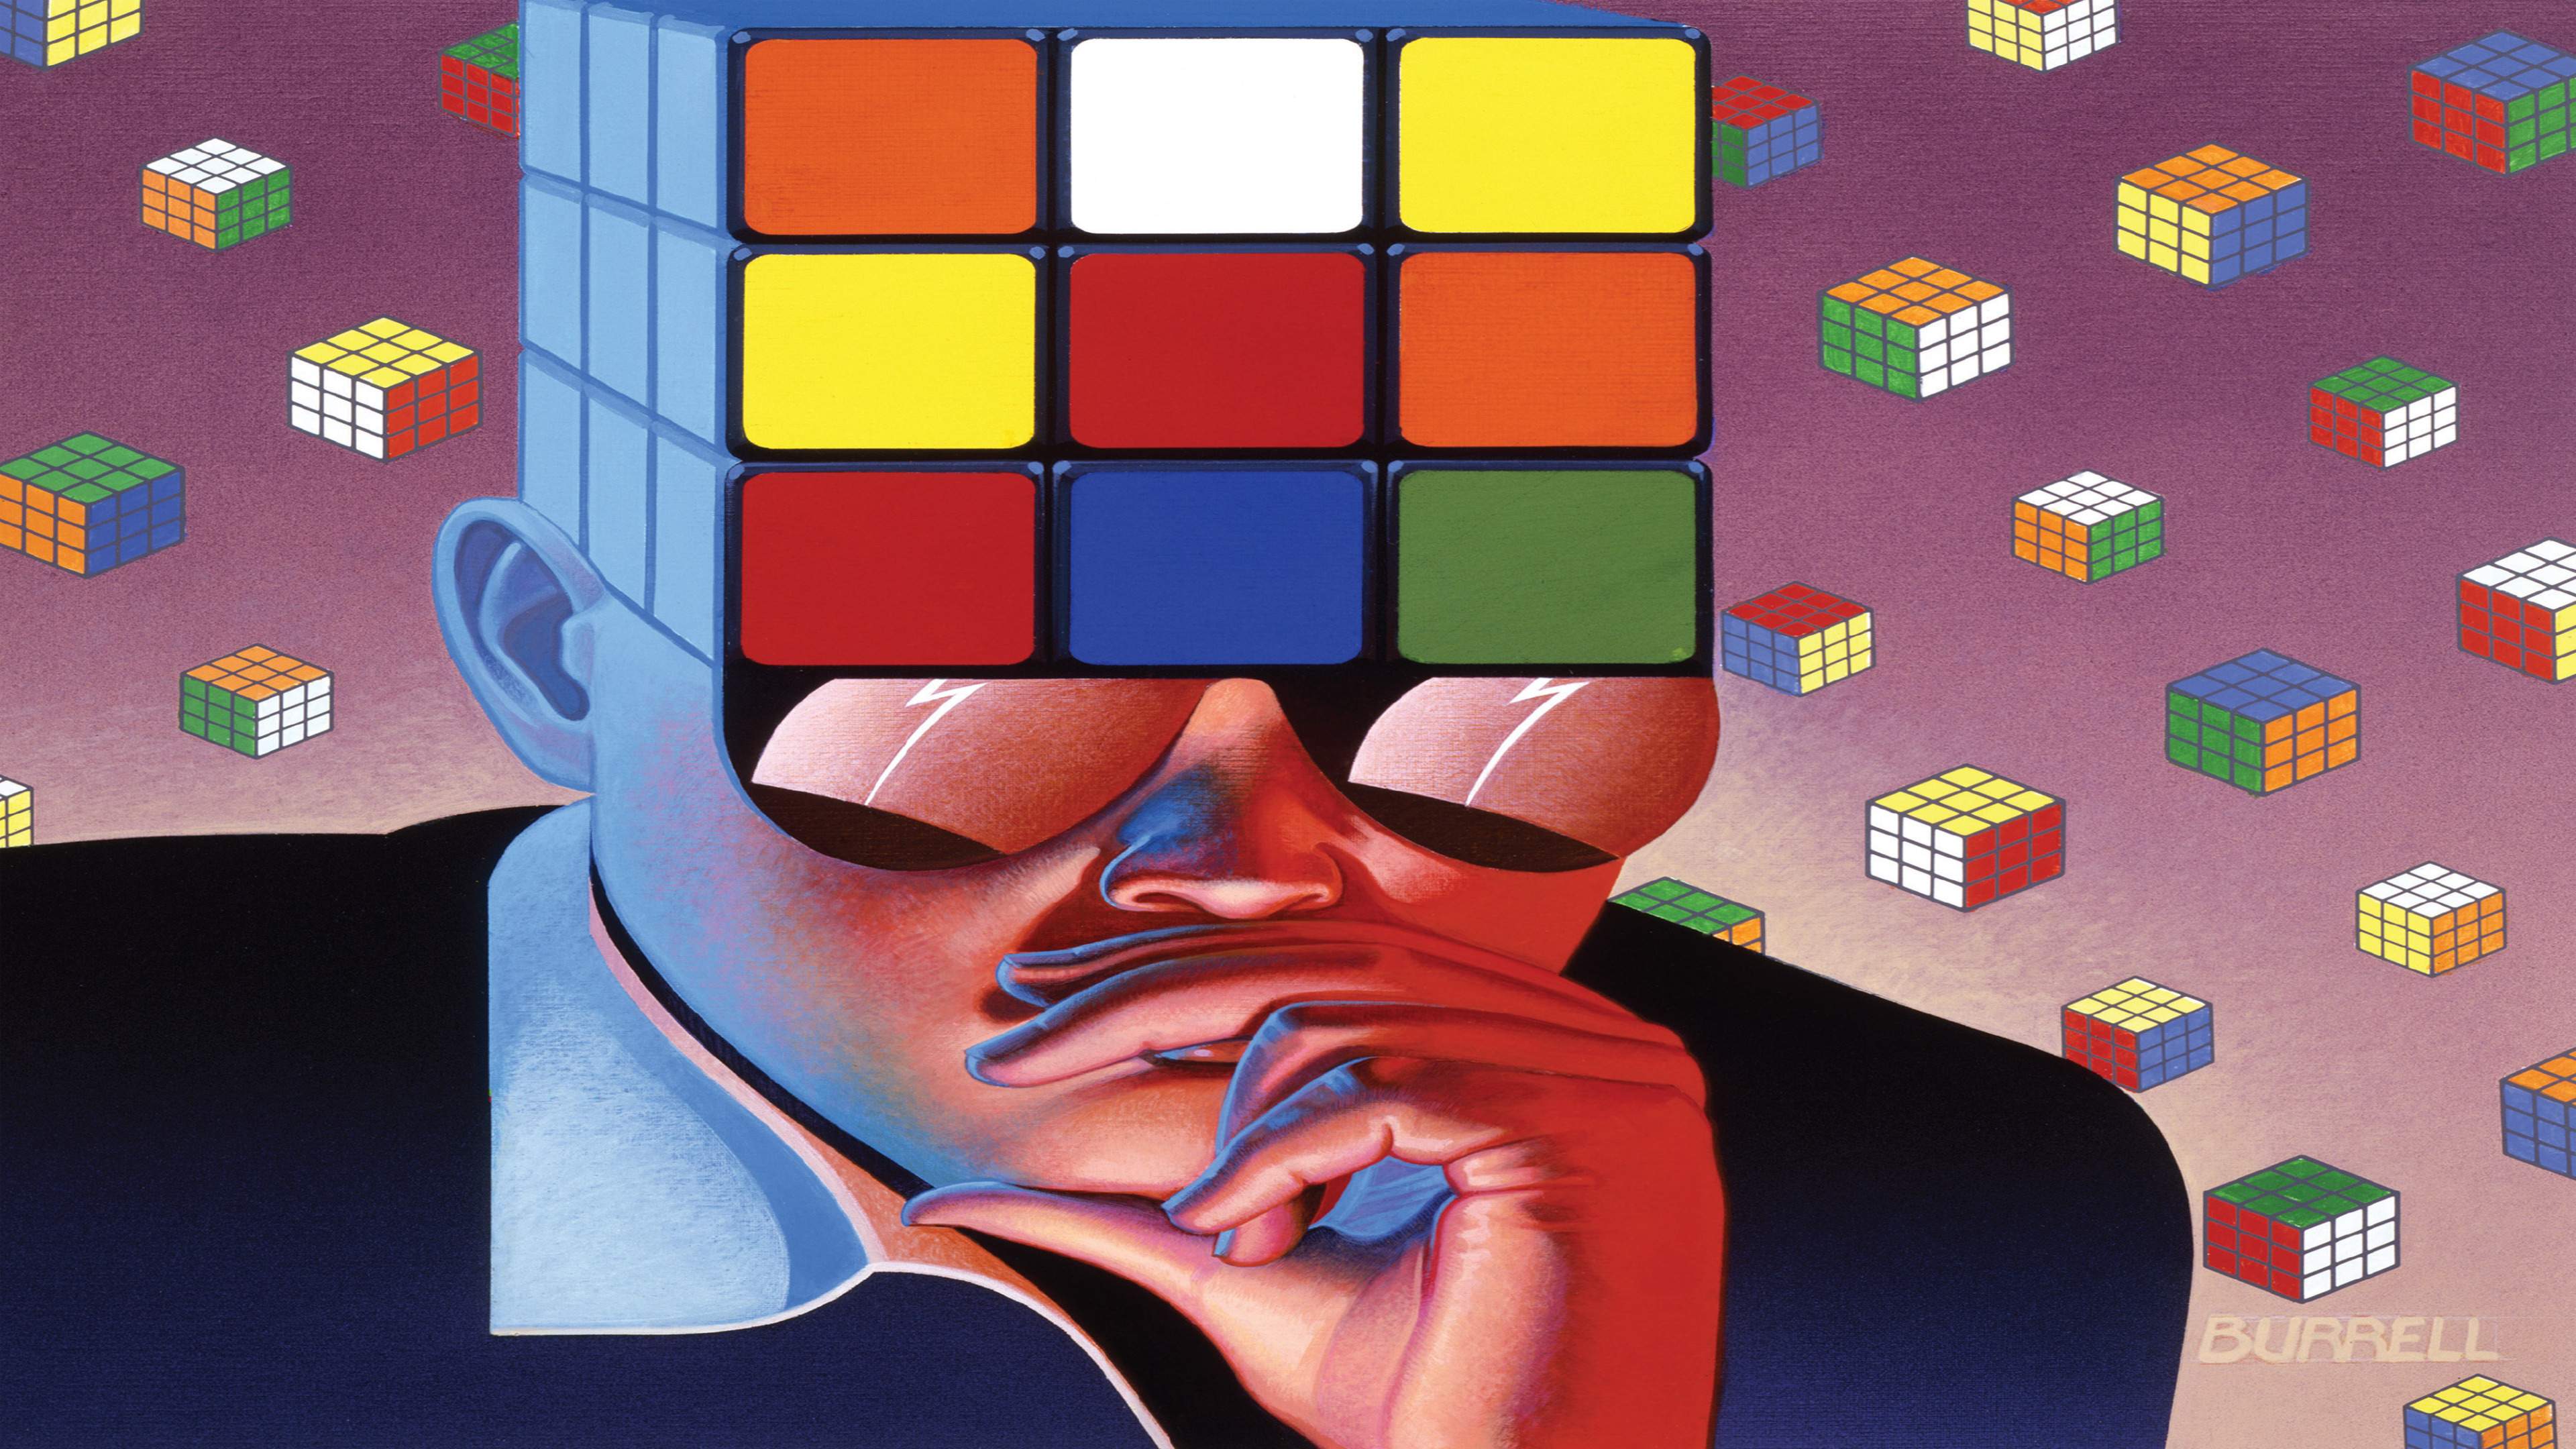 Rubik's Cube 3-D